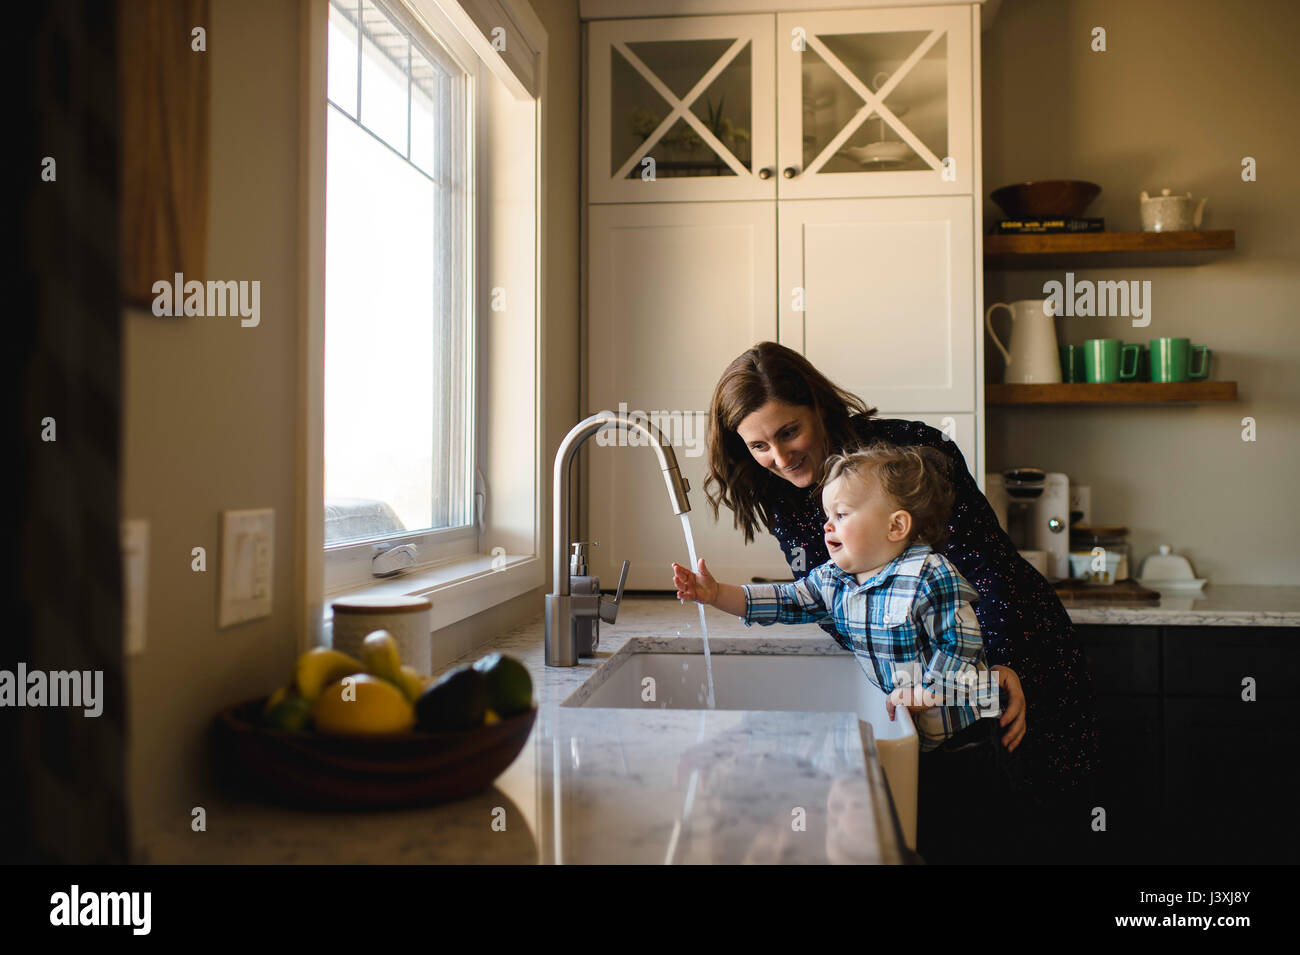 Madre ayudando a un hijo pequeño lavarse las manos en el lavabo de la cocina Foto de stock